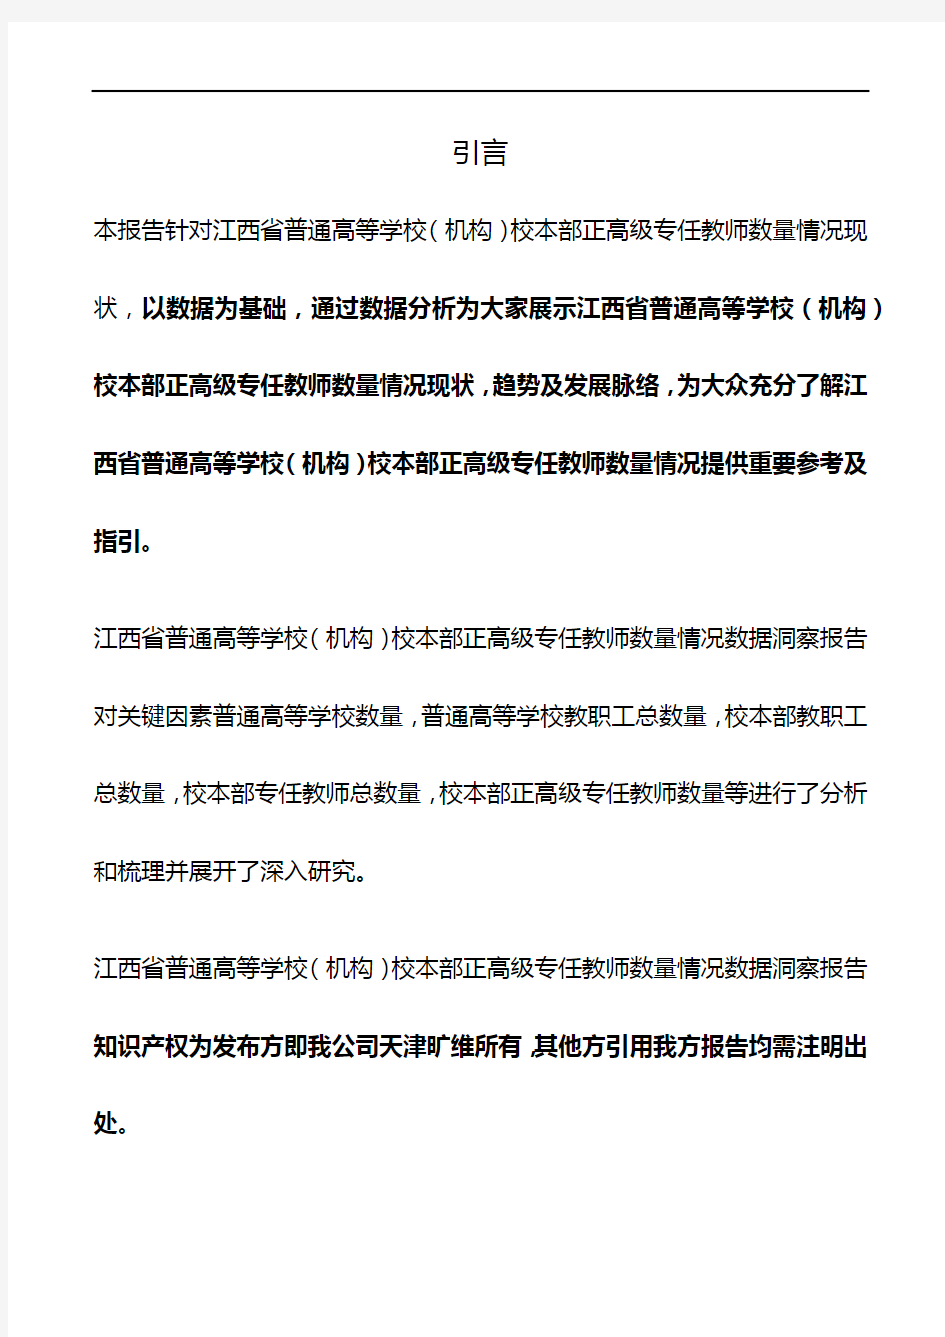 江西省普通高等学校(机构)校本部正高级专任教师数量情况3年数据洞察报告2020版